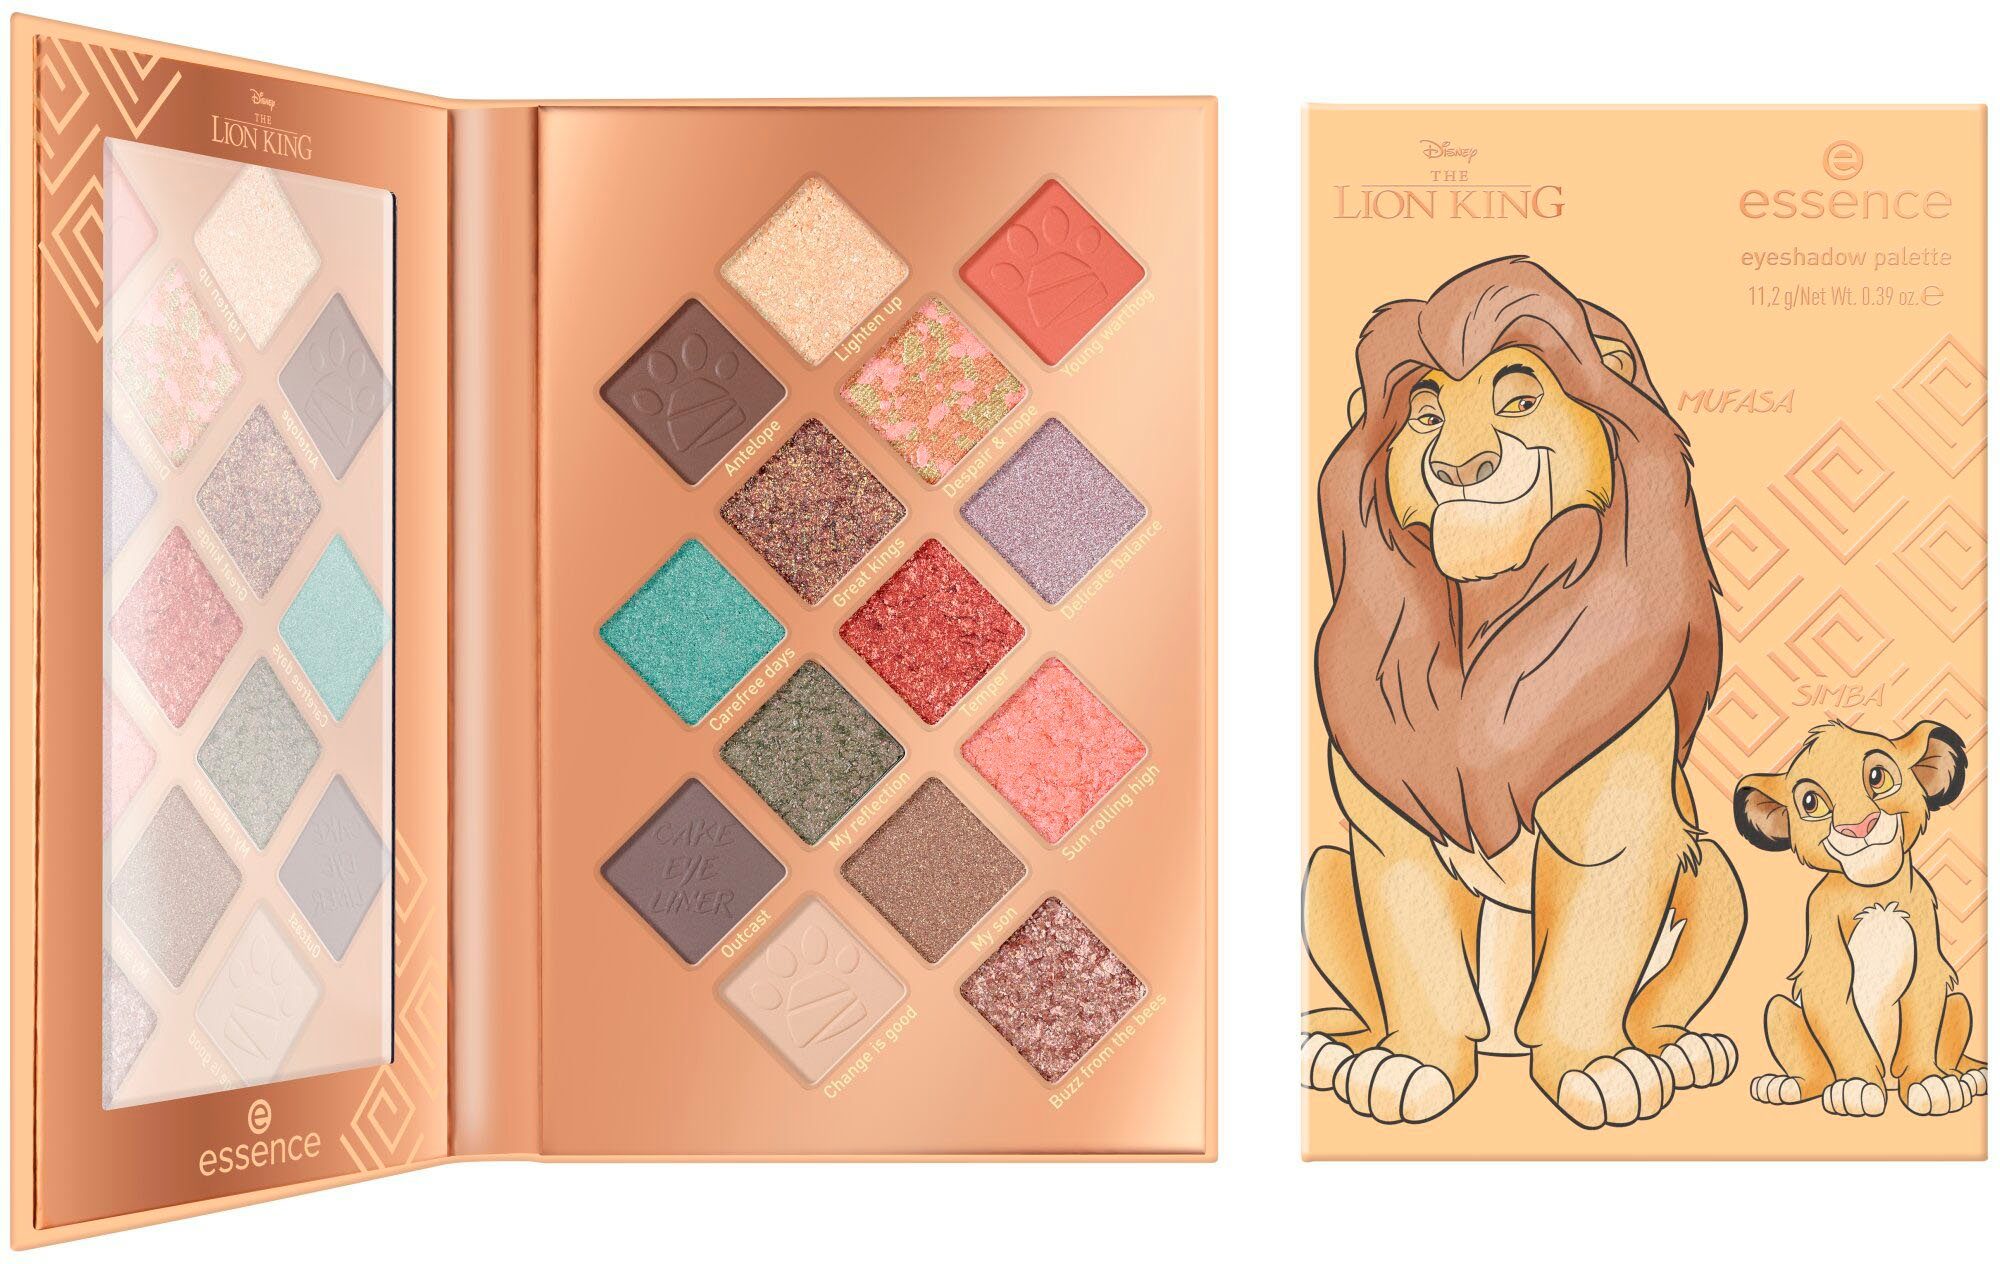 Essence Lidschatten-Palette Disney The Lion King eyeshadow palette,  Finishes in seidenmatten & metallischen Farbtönen